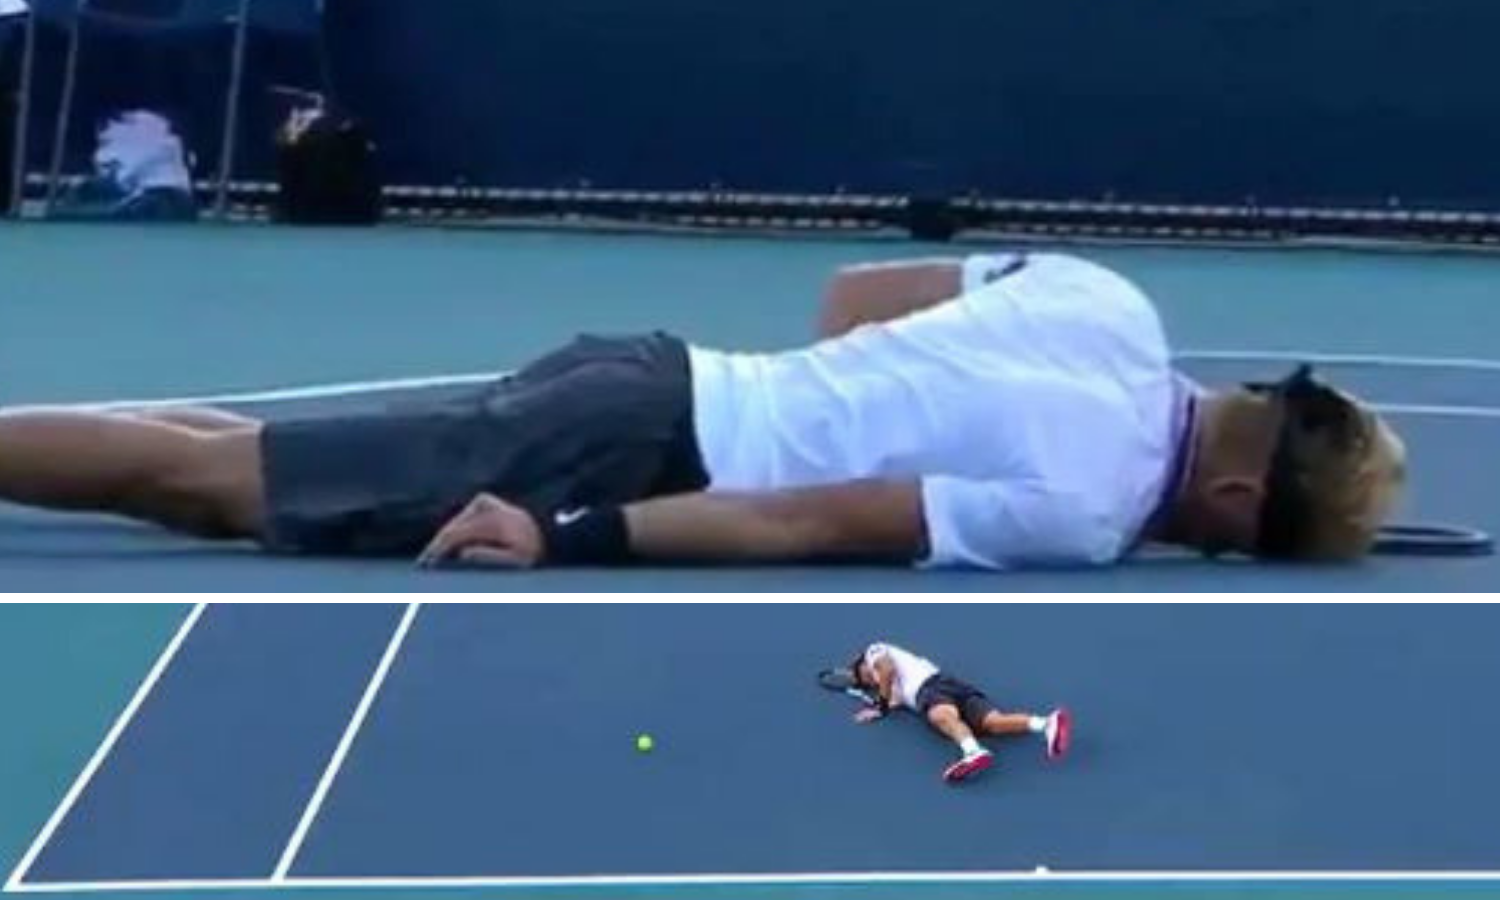 Užasne scene u Miamiju: Mladi tenisač se srušio tijekom meča